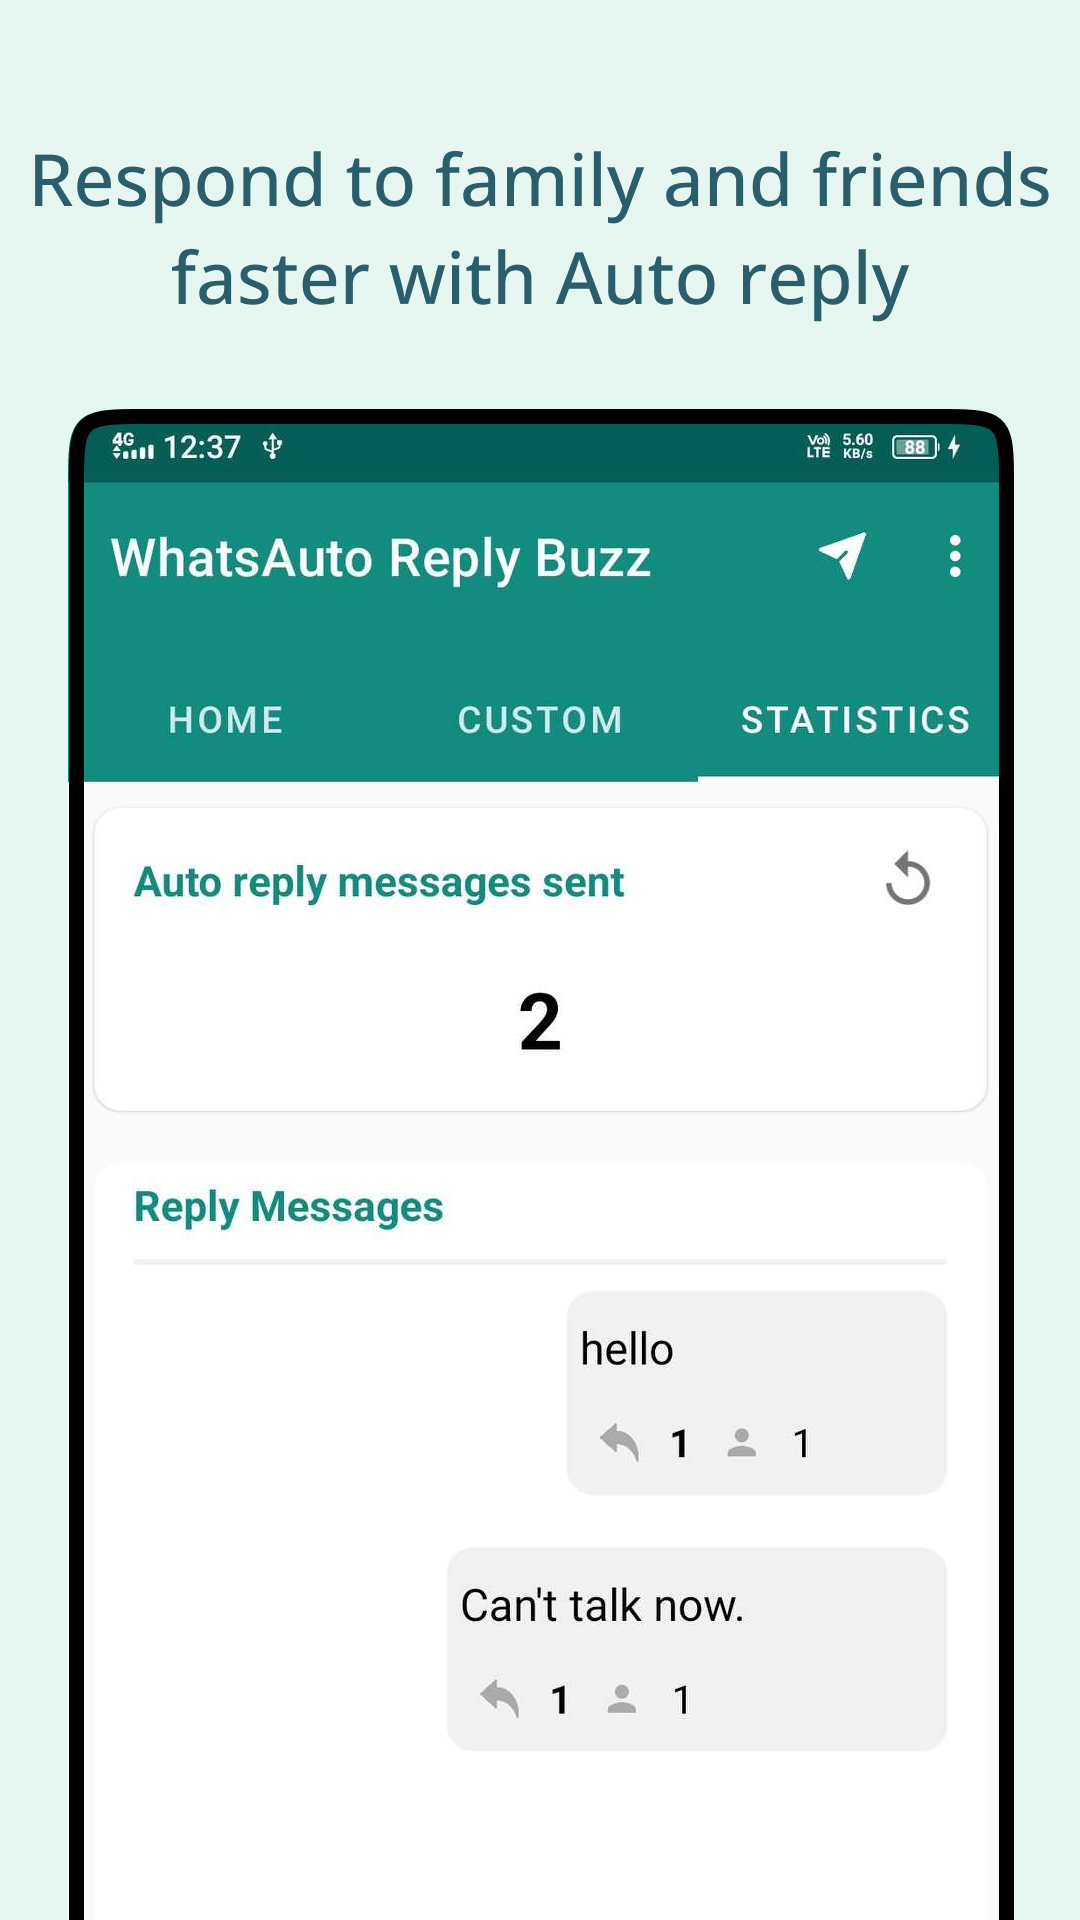 WhatsAuto Reply Buzz